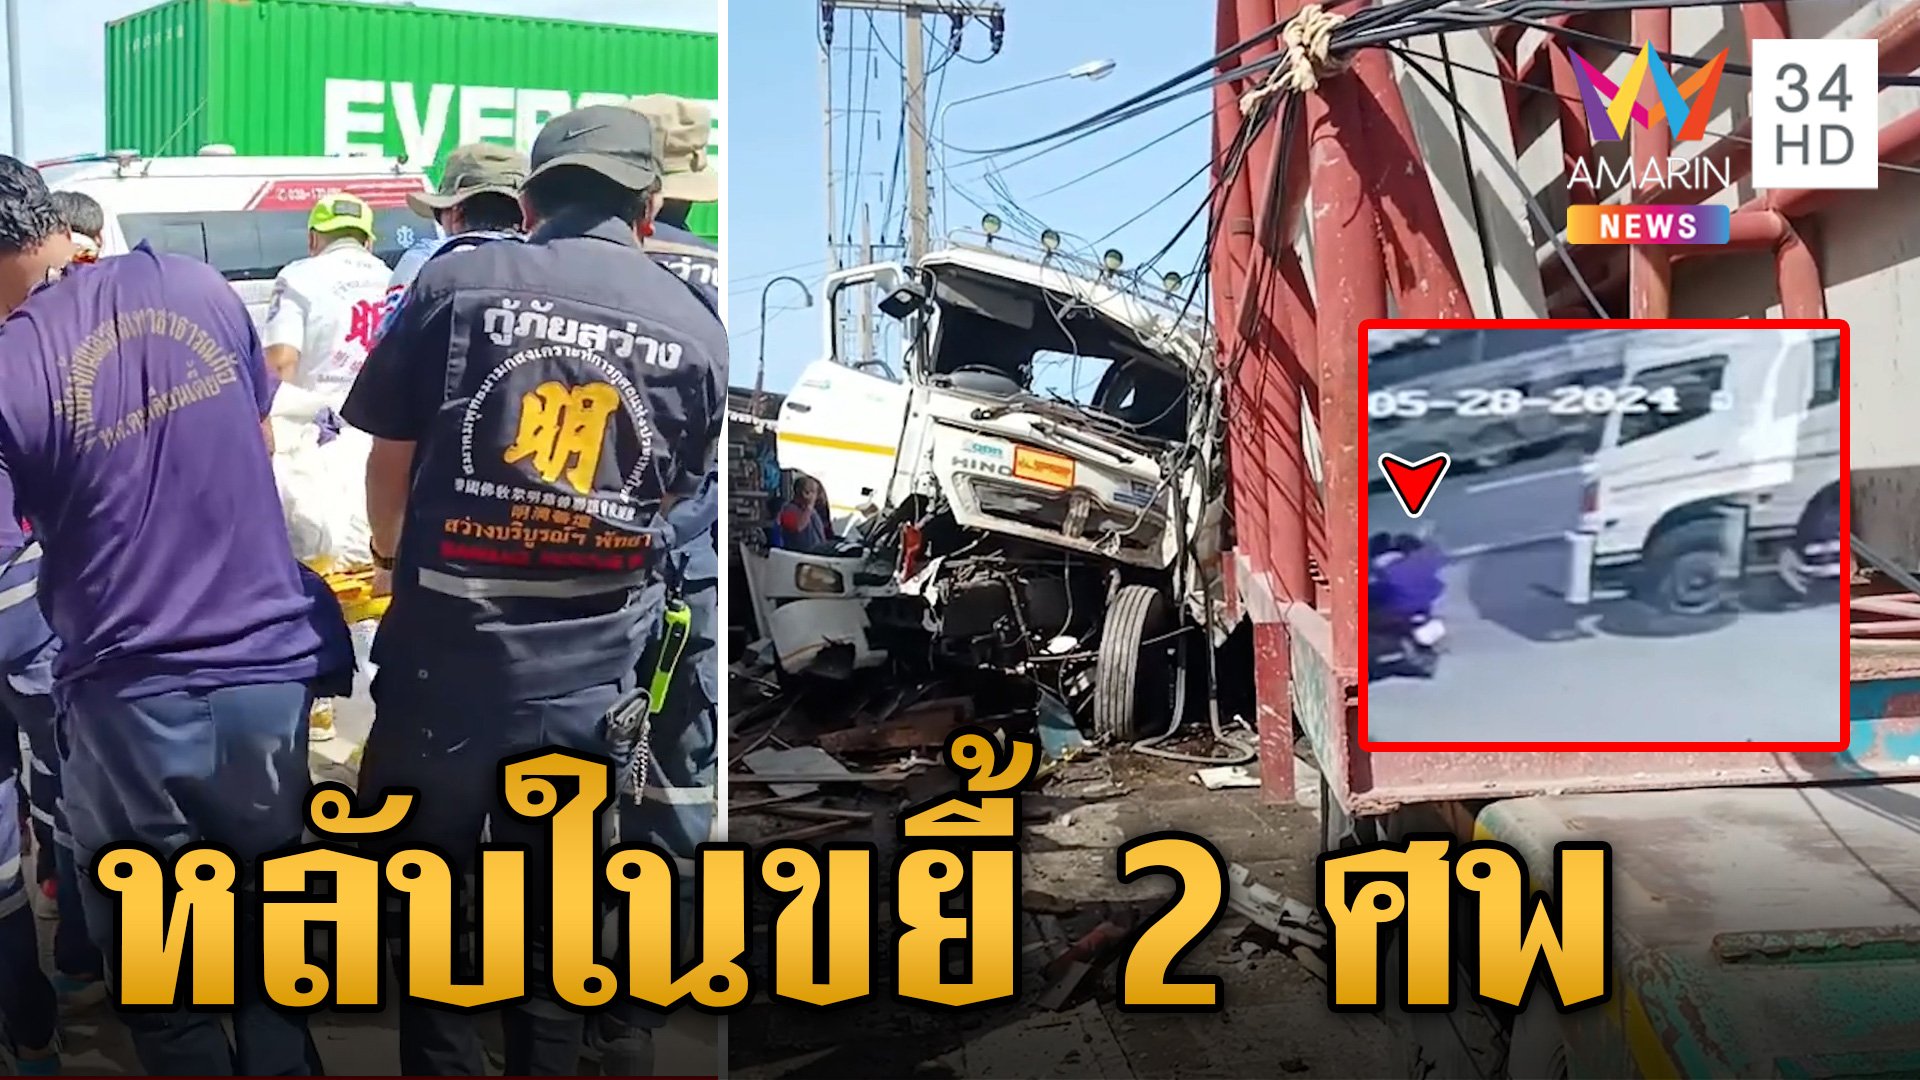 รถพ่วงหลับในชนสยอง ดับ 2 ศพ  | ข่าวเย็นอมรินทร์ | 28 พ.ค. 67 | AMARIN TVHD34